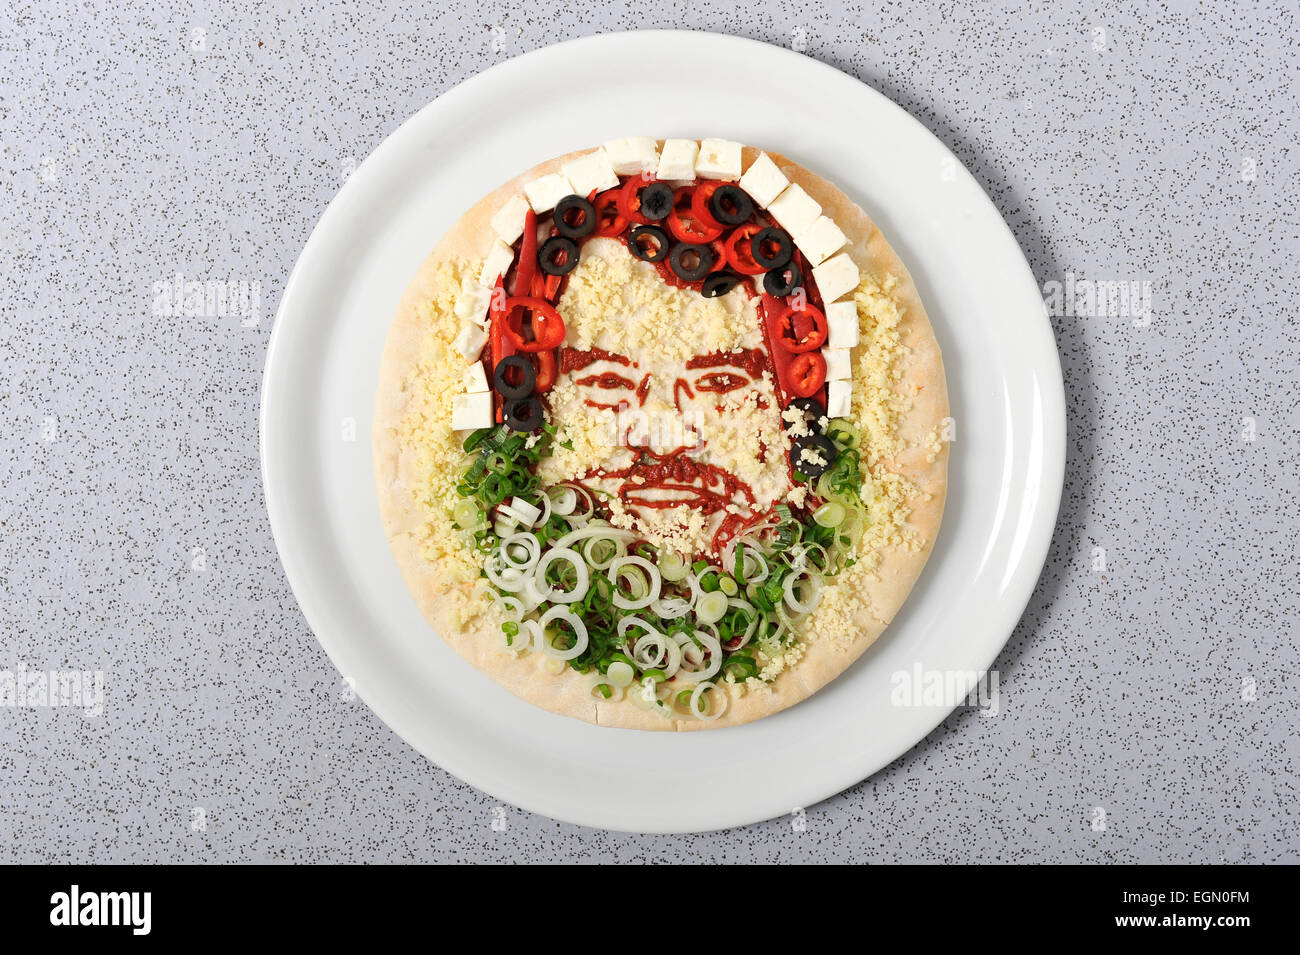 Prudence Staite artiste alimentaire a créé des pizzas de visages célèbres. Banque D'Images